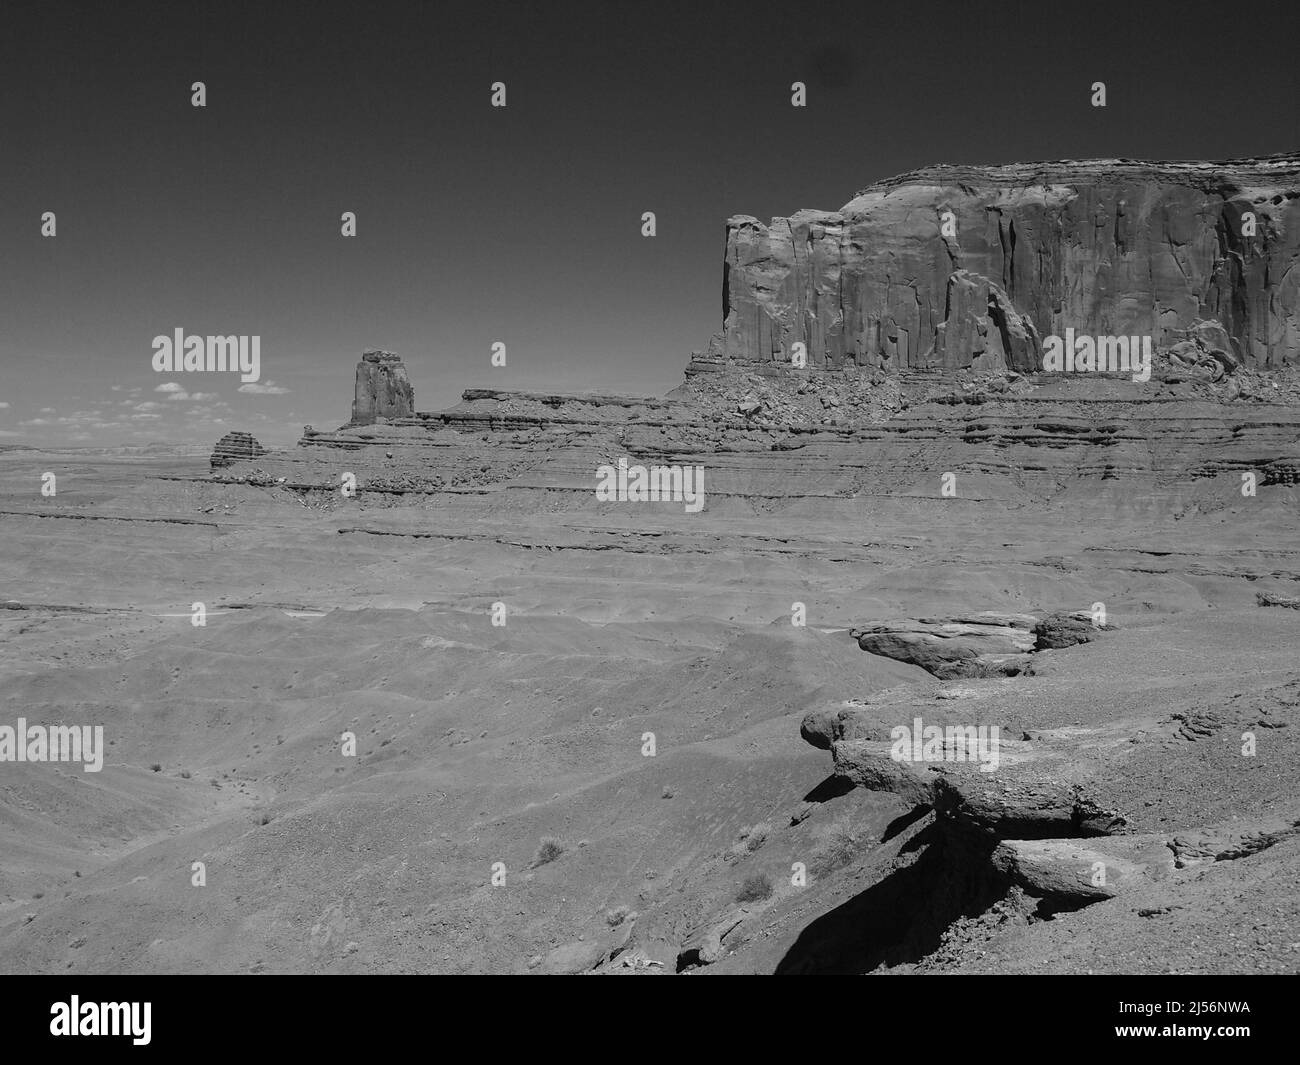 Monument Valley, Arizona, nella Navajo Indian Nation, vicino all'angolo nord-orientale del confine con lo Utah, Arizona. Oljato - Monumento Valle Foto Stock